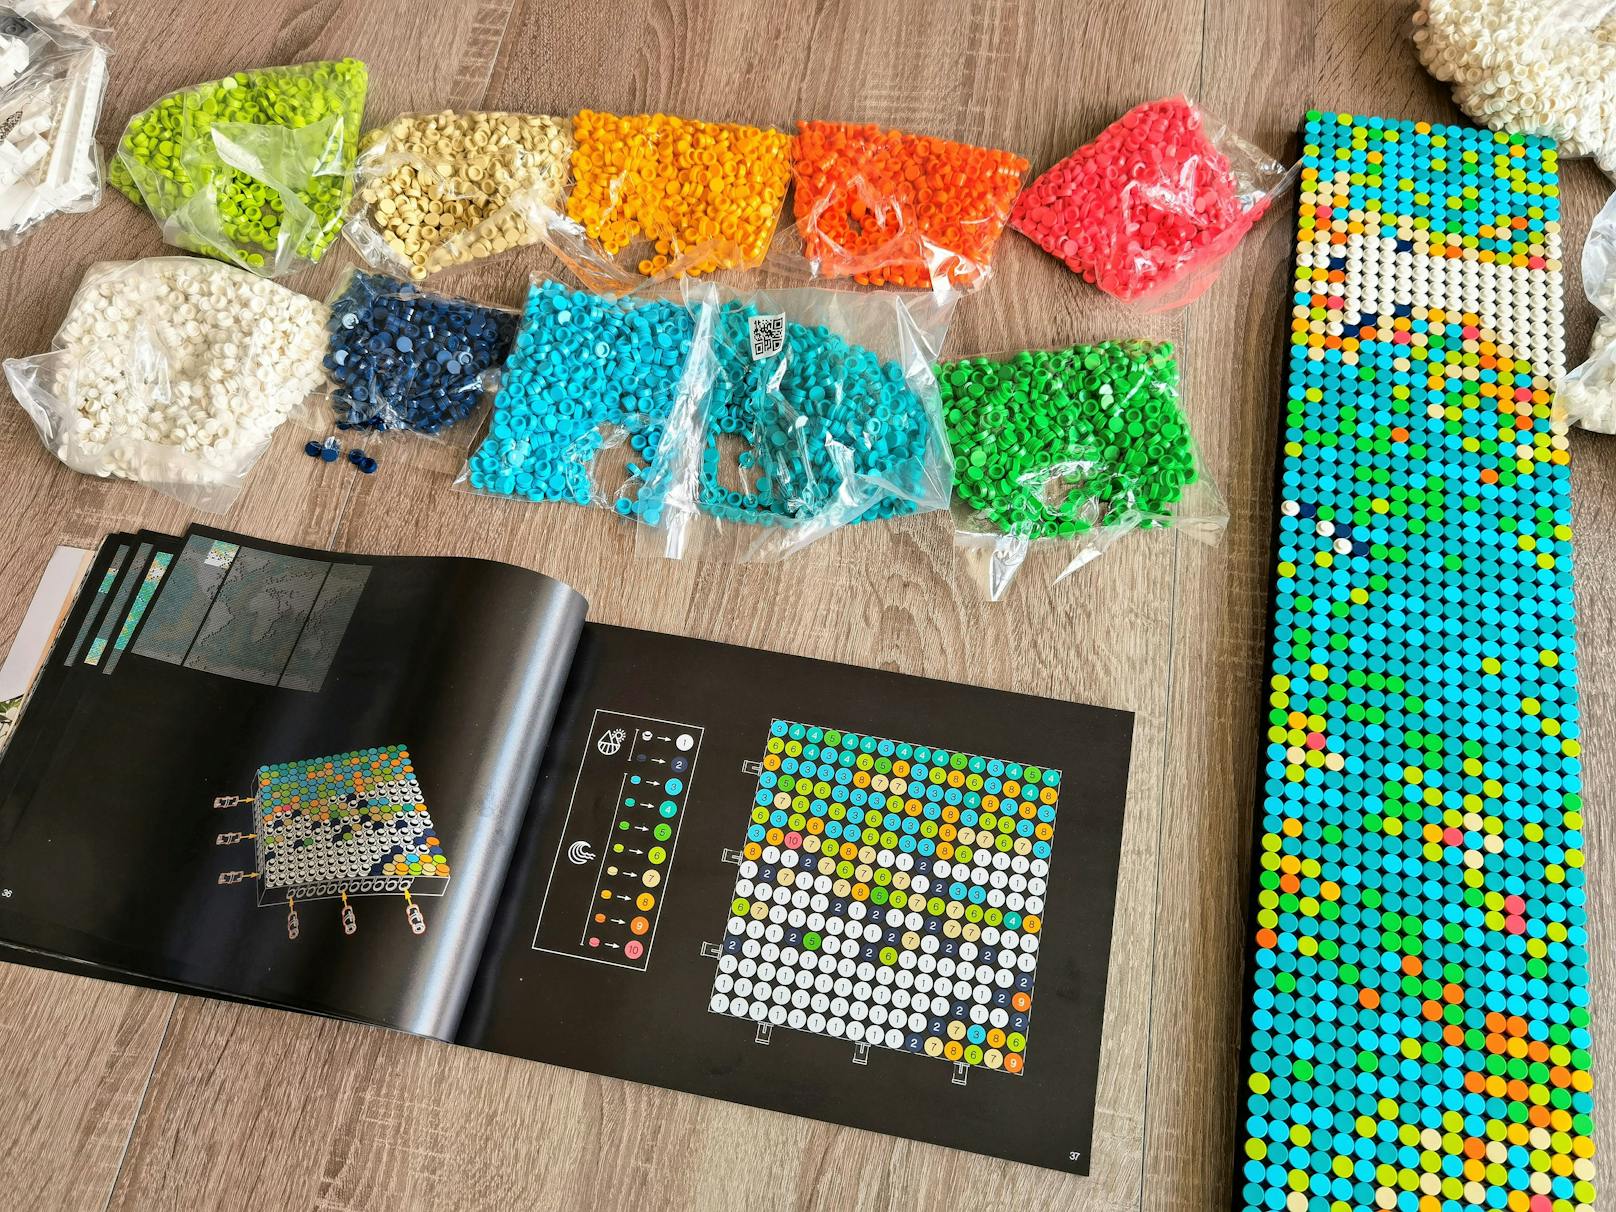 LEGO nimmt es laut Anleitung mit den Ozean-Fliesen übrigens nicht so genau. Hält man sich exakt an die Farbgebung der Anleitung, dauert der Bauvorgang gut 20 Stunden, da Fliese für Fliese die "richtige" Farbe eingesetzt wird.